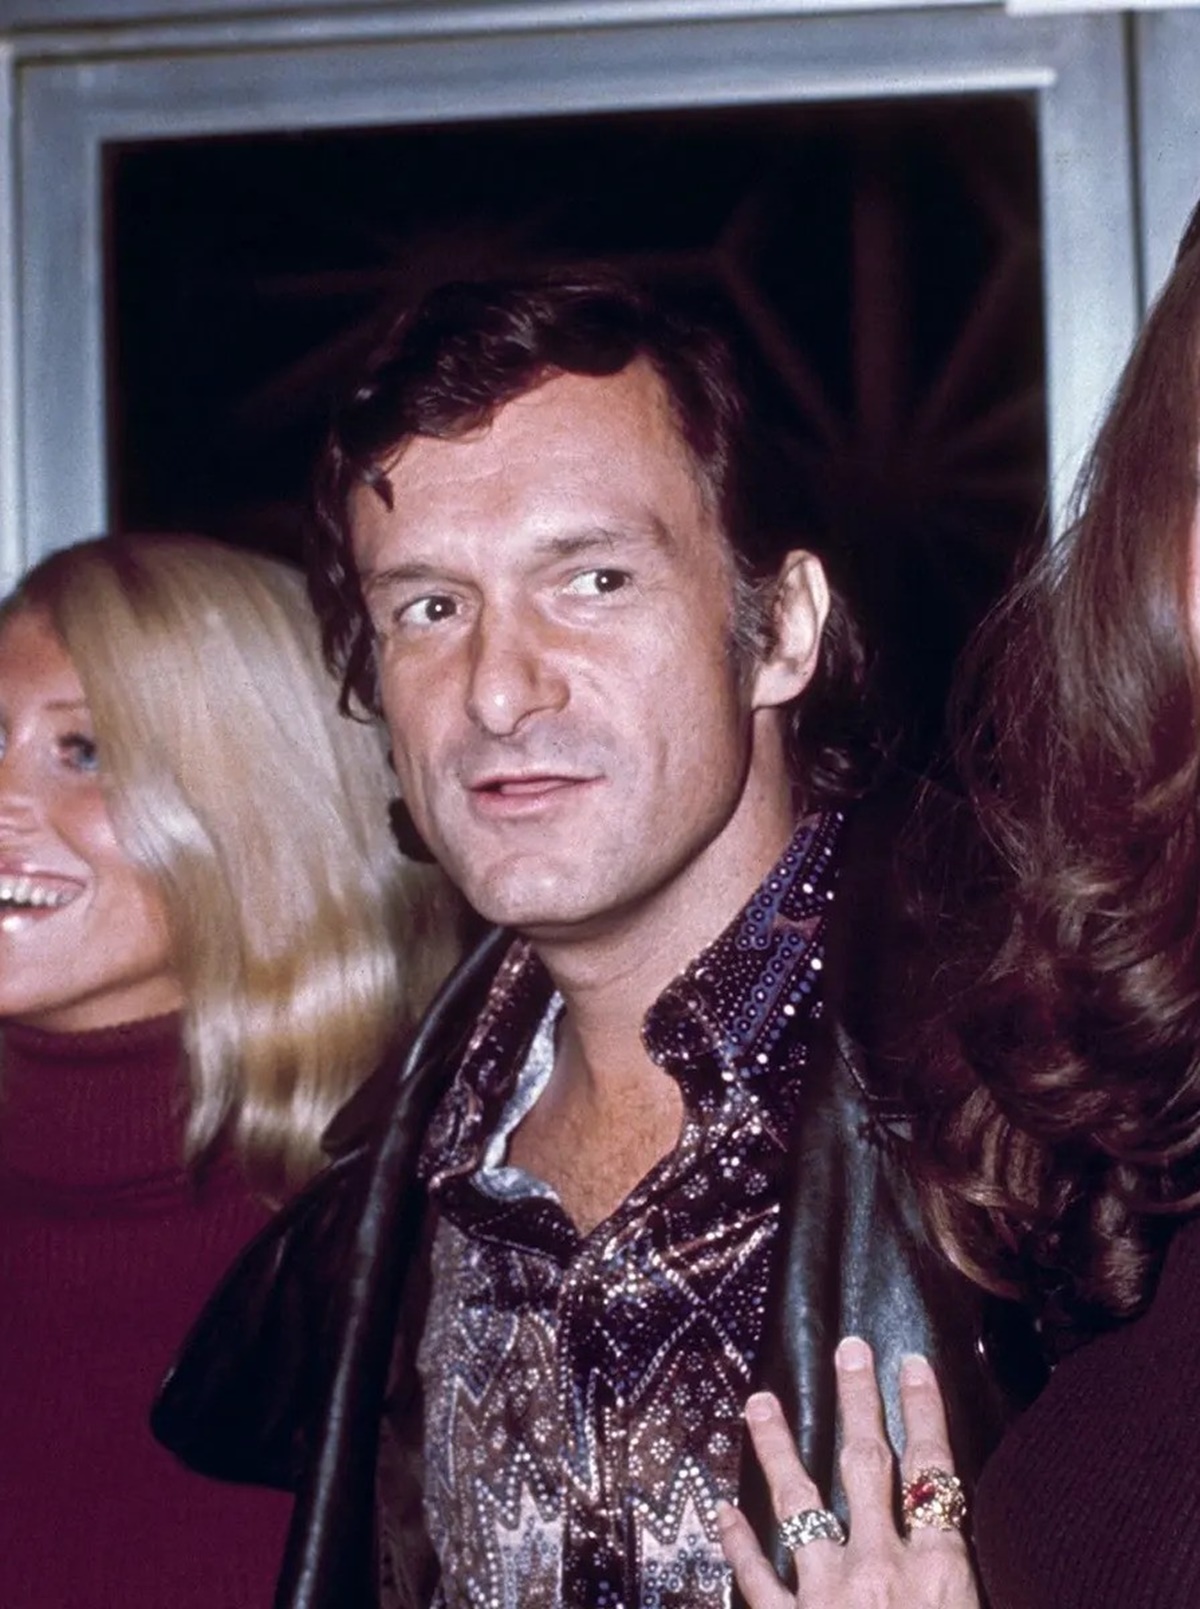 Hugh Hefner fiatalkori fotója – Piszok jóképű volt fiatalon a Playboy atyja